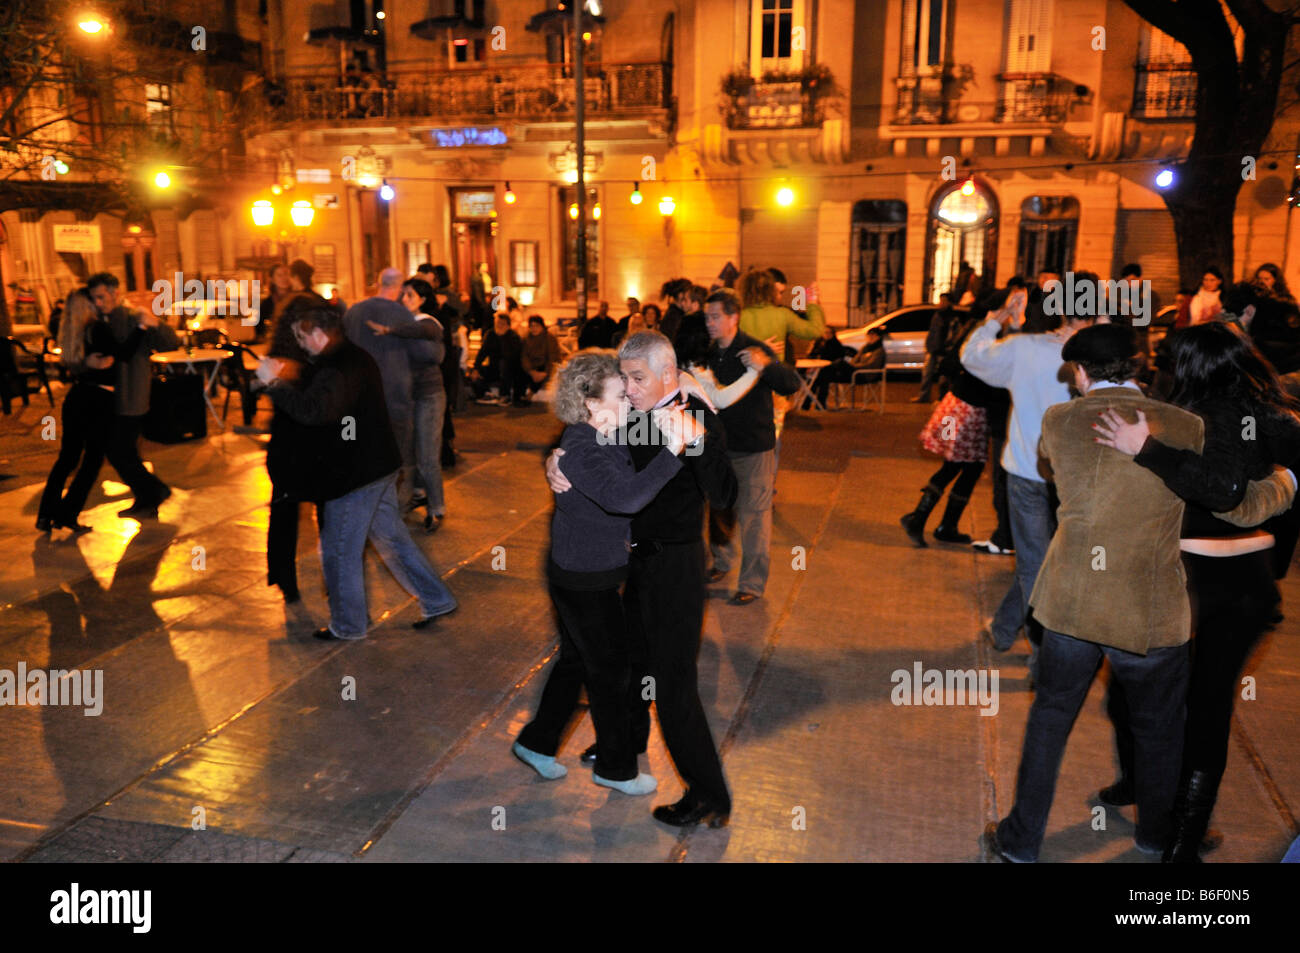 Tänzer bei einer Veranstaltung des Tango, Milonga, auf der Plaza Dorrego Platz, Barrio San Telmo, Buenos Aires, Argentinien, Südamerika Stockfoto